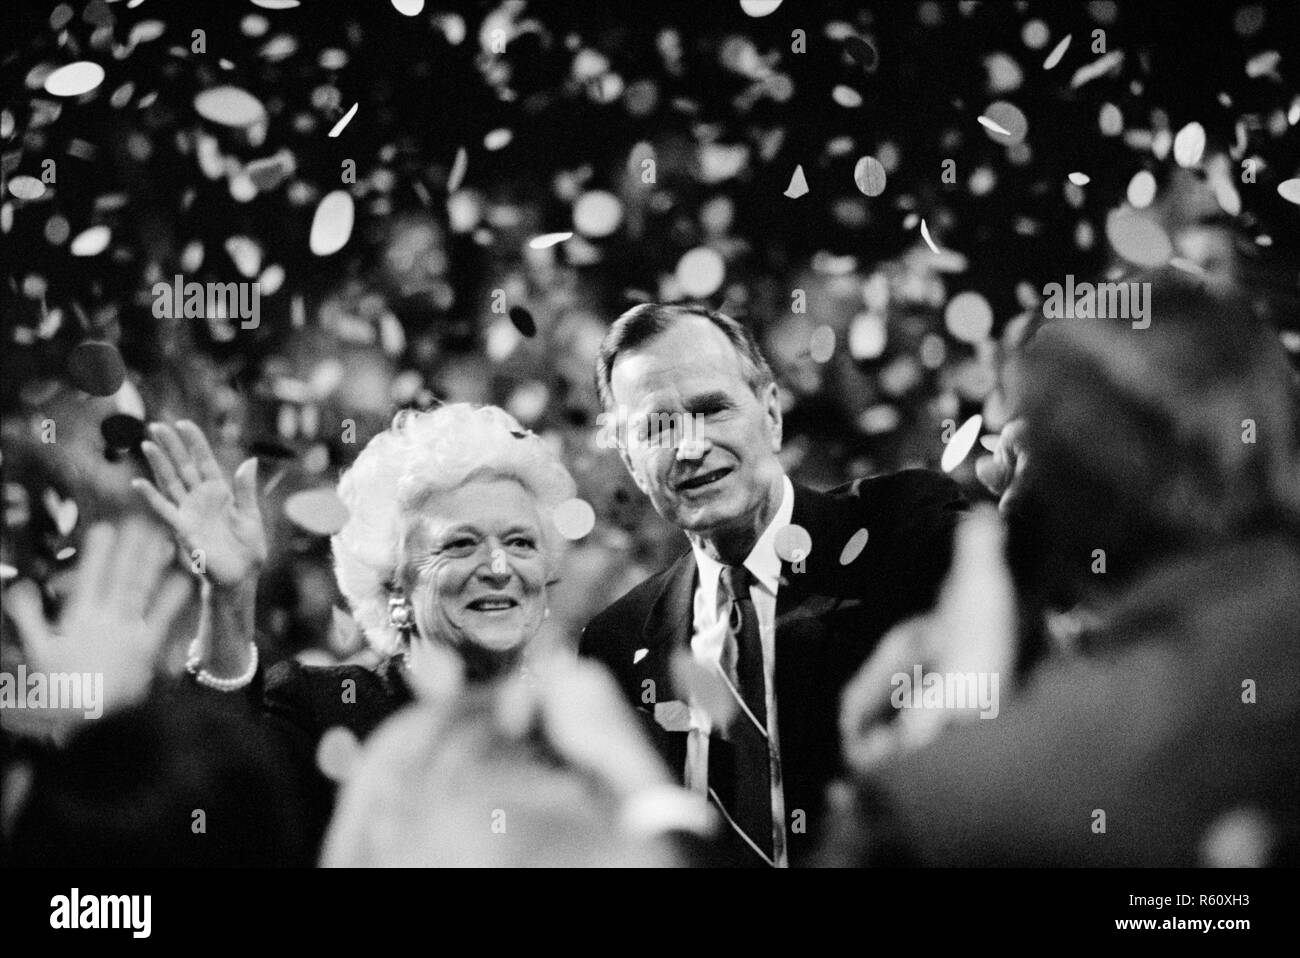 Candidat à la présidence George H. W. Bush et son épouse Barbara Bush vague à la foule lors de la Convention nationale républicaine de 1992 à Houston, Texas. Banque D'Images